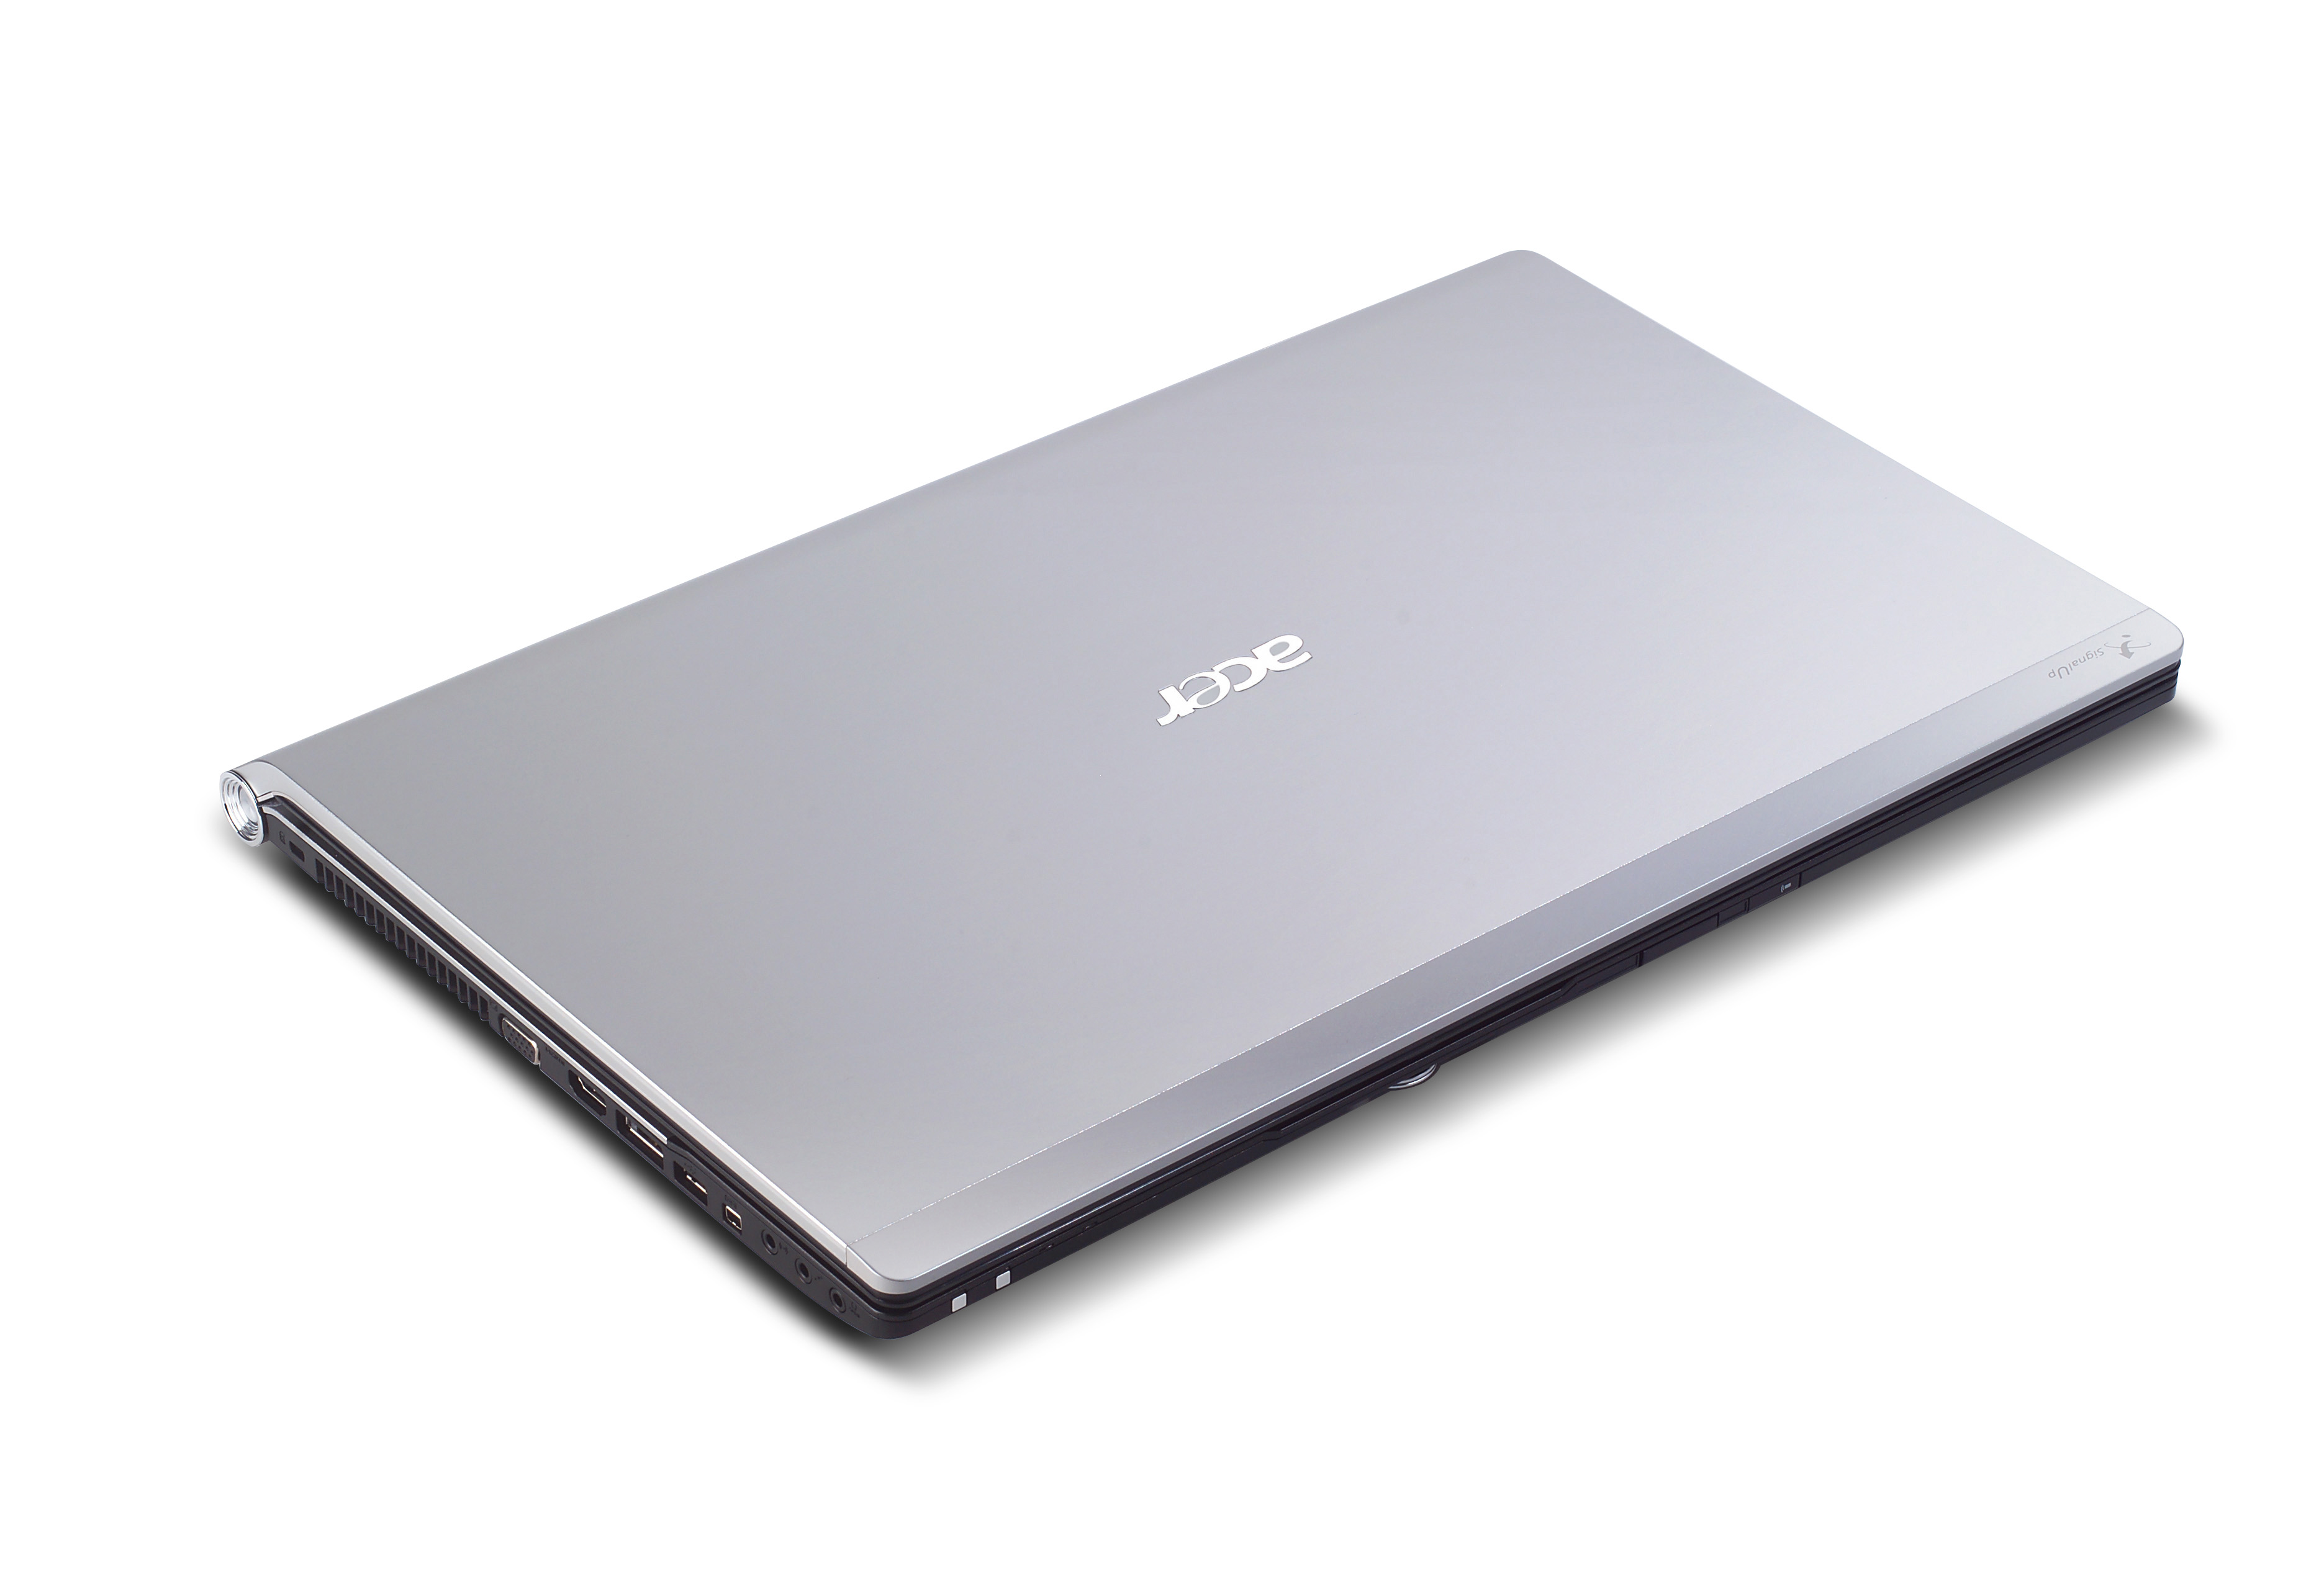 宏碁藍光Full HD高畫質影音旗艦筆電Acer Aspire 8943G全新鎂鋁簡潔造型上市